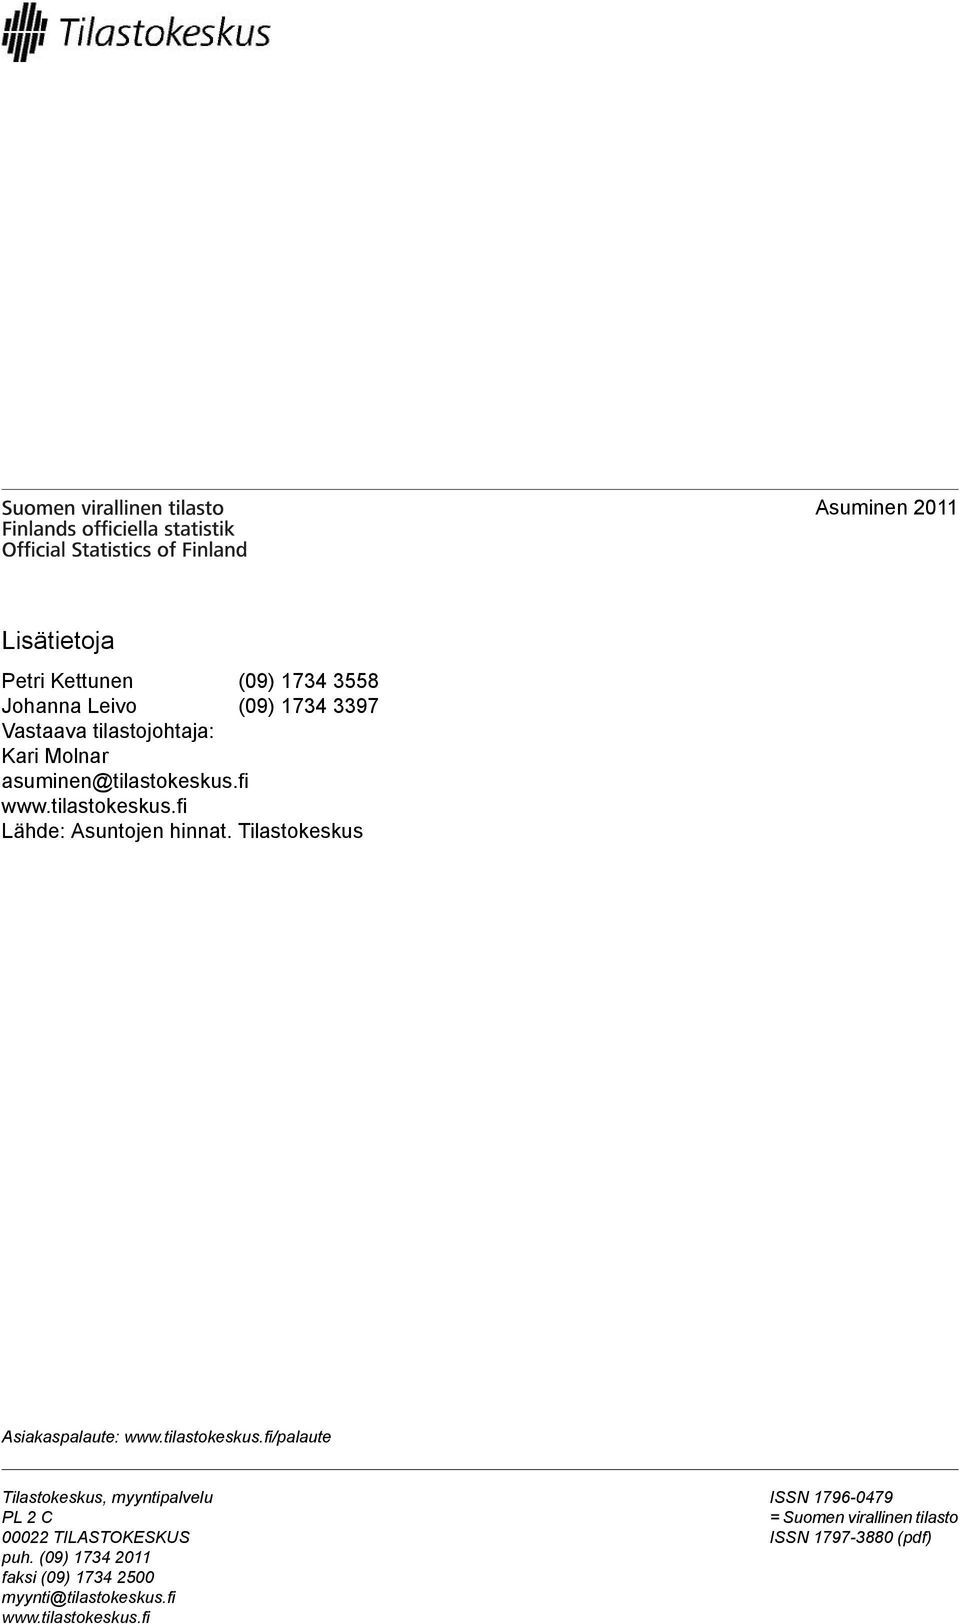 wwwtilastokeskusfi/palaute Tilastokeskus, myyntipalvelu PL 2 C 00022 TILASTOKESKUS puh (09) 1734 2011 faksi